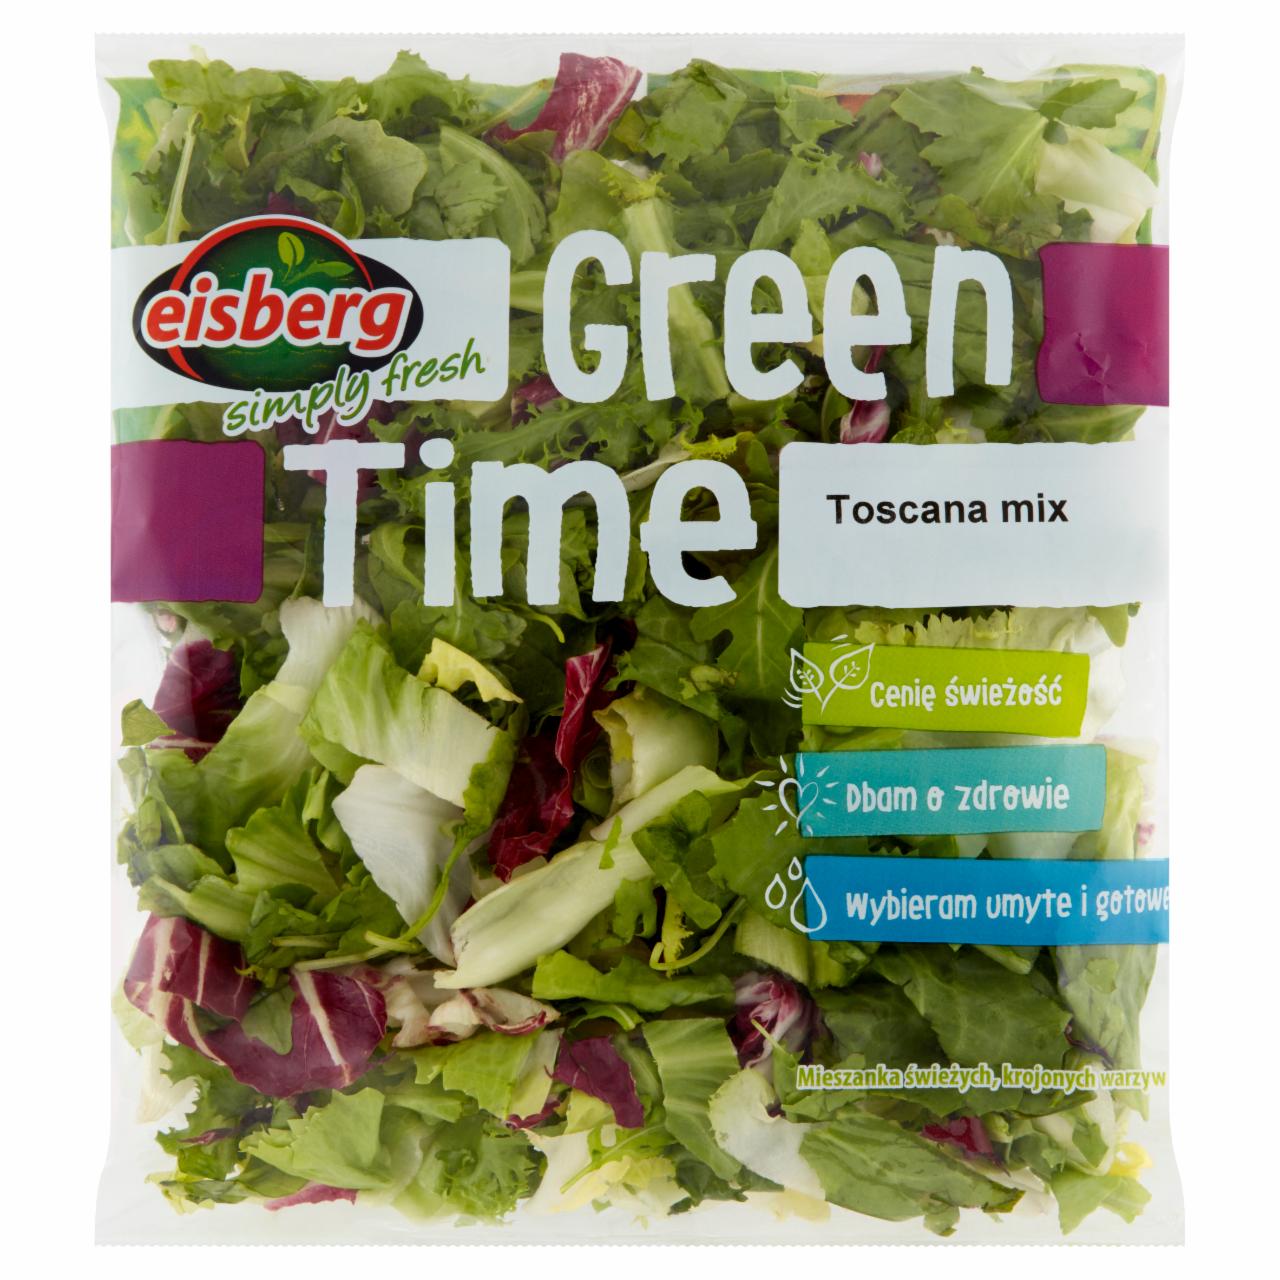 Zdjęcia - Eisberg Green Time Toscana mix z rukolą Mieszanka świeżych krojonych warzyw 170 g